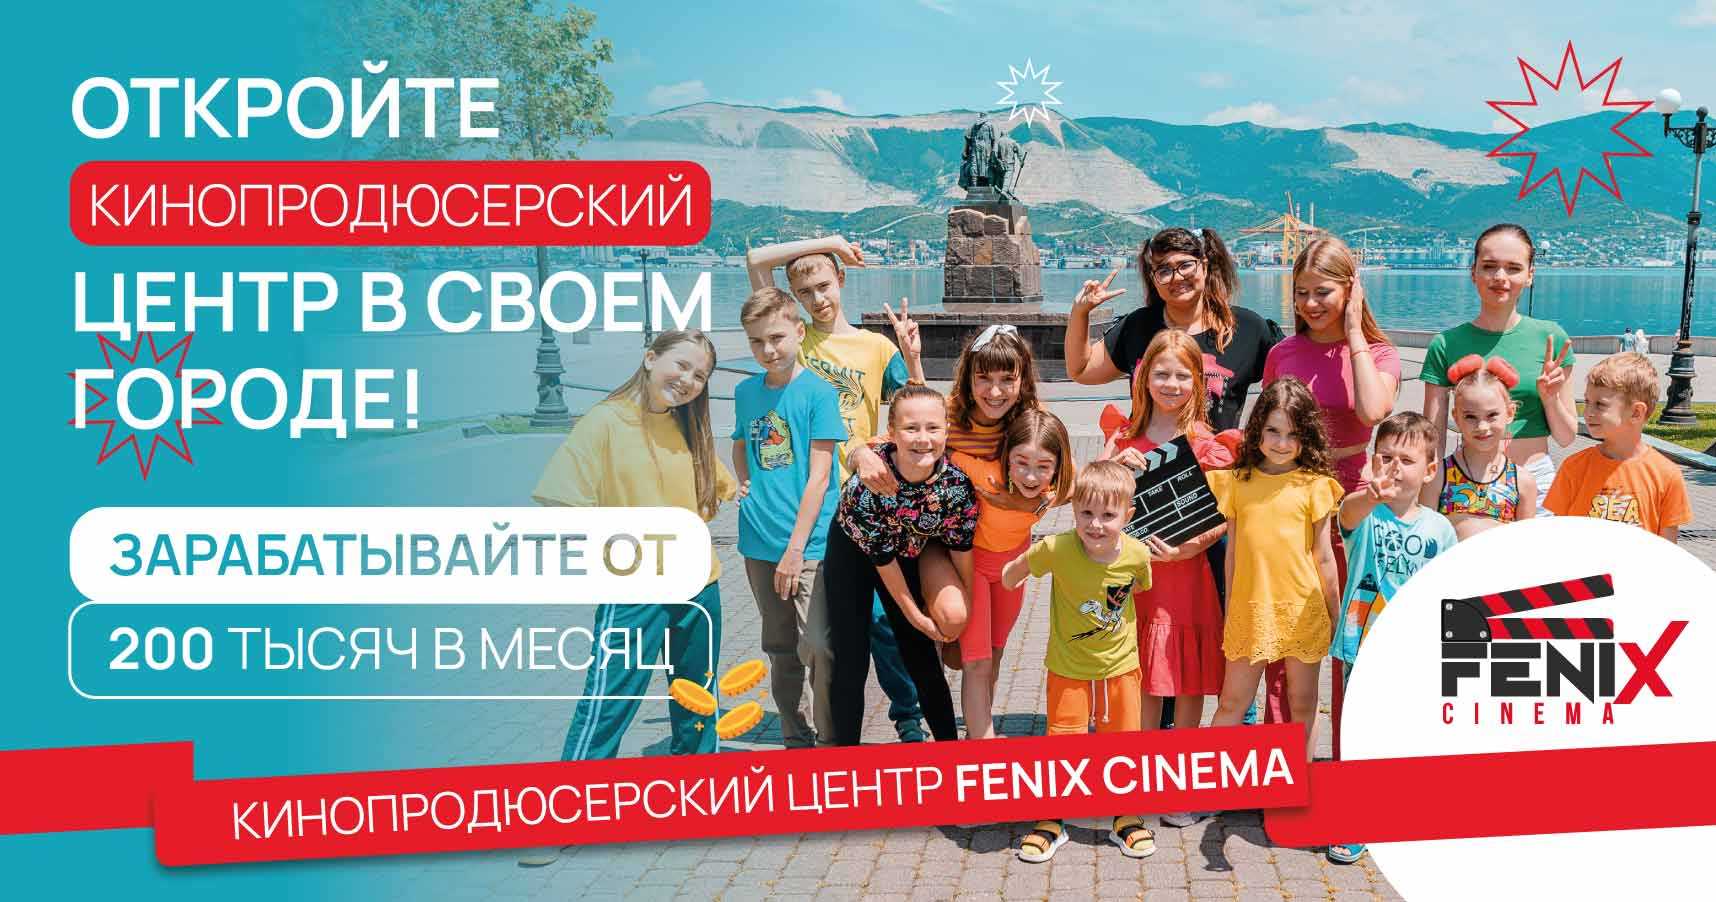 Франшиза киношколы при поддержке собственной кинокомпании Fenix Cinema